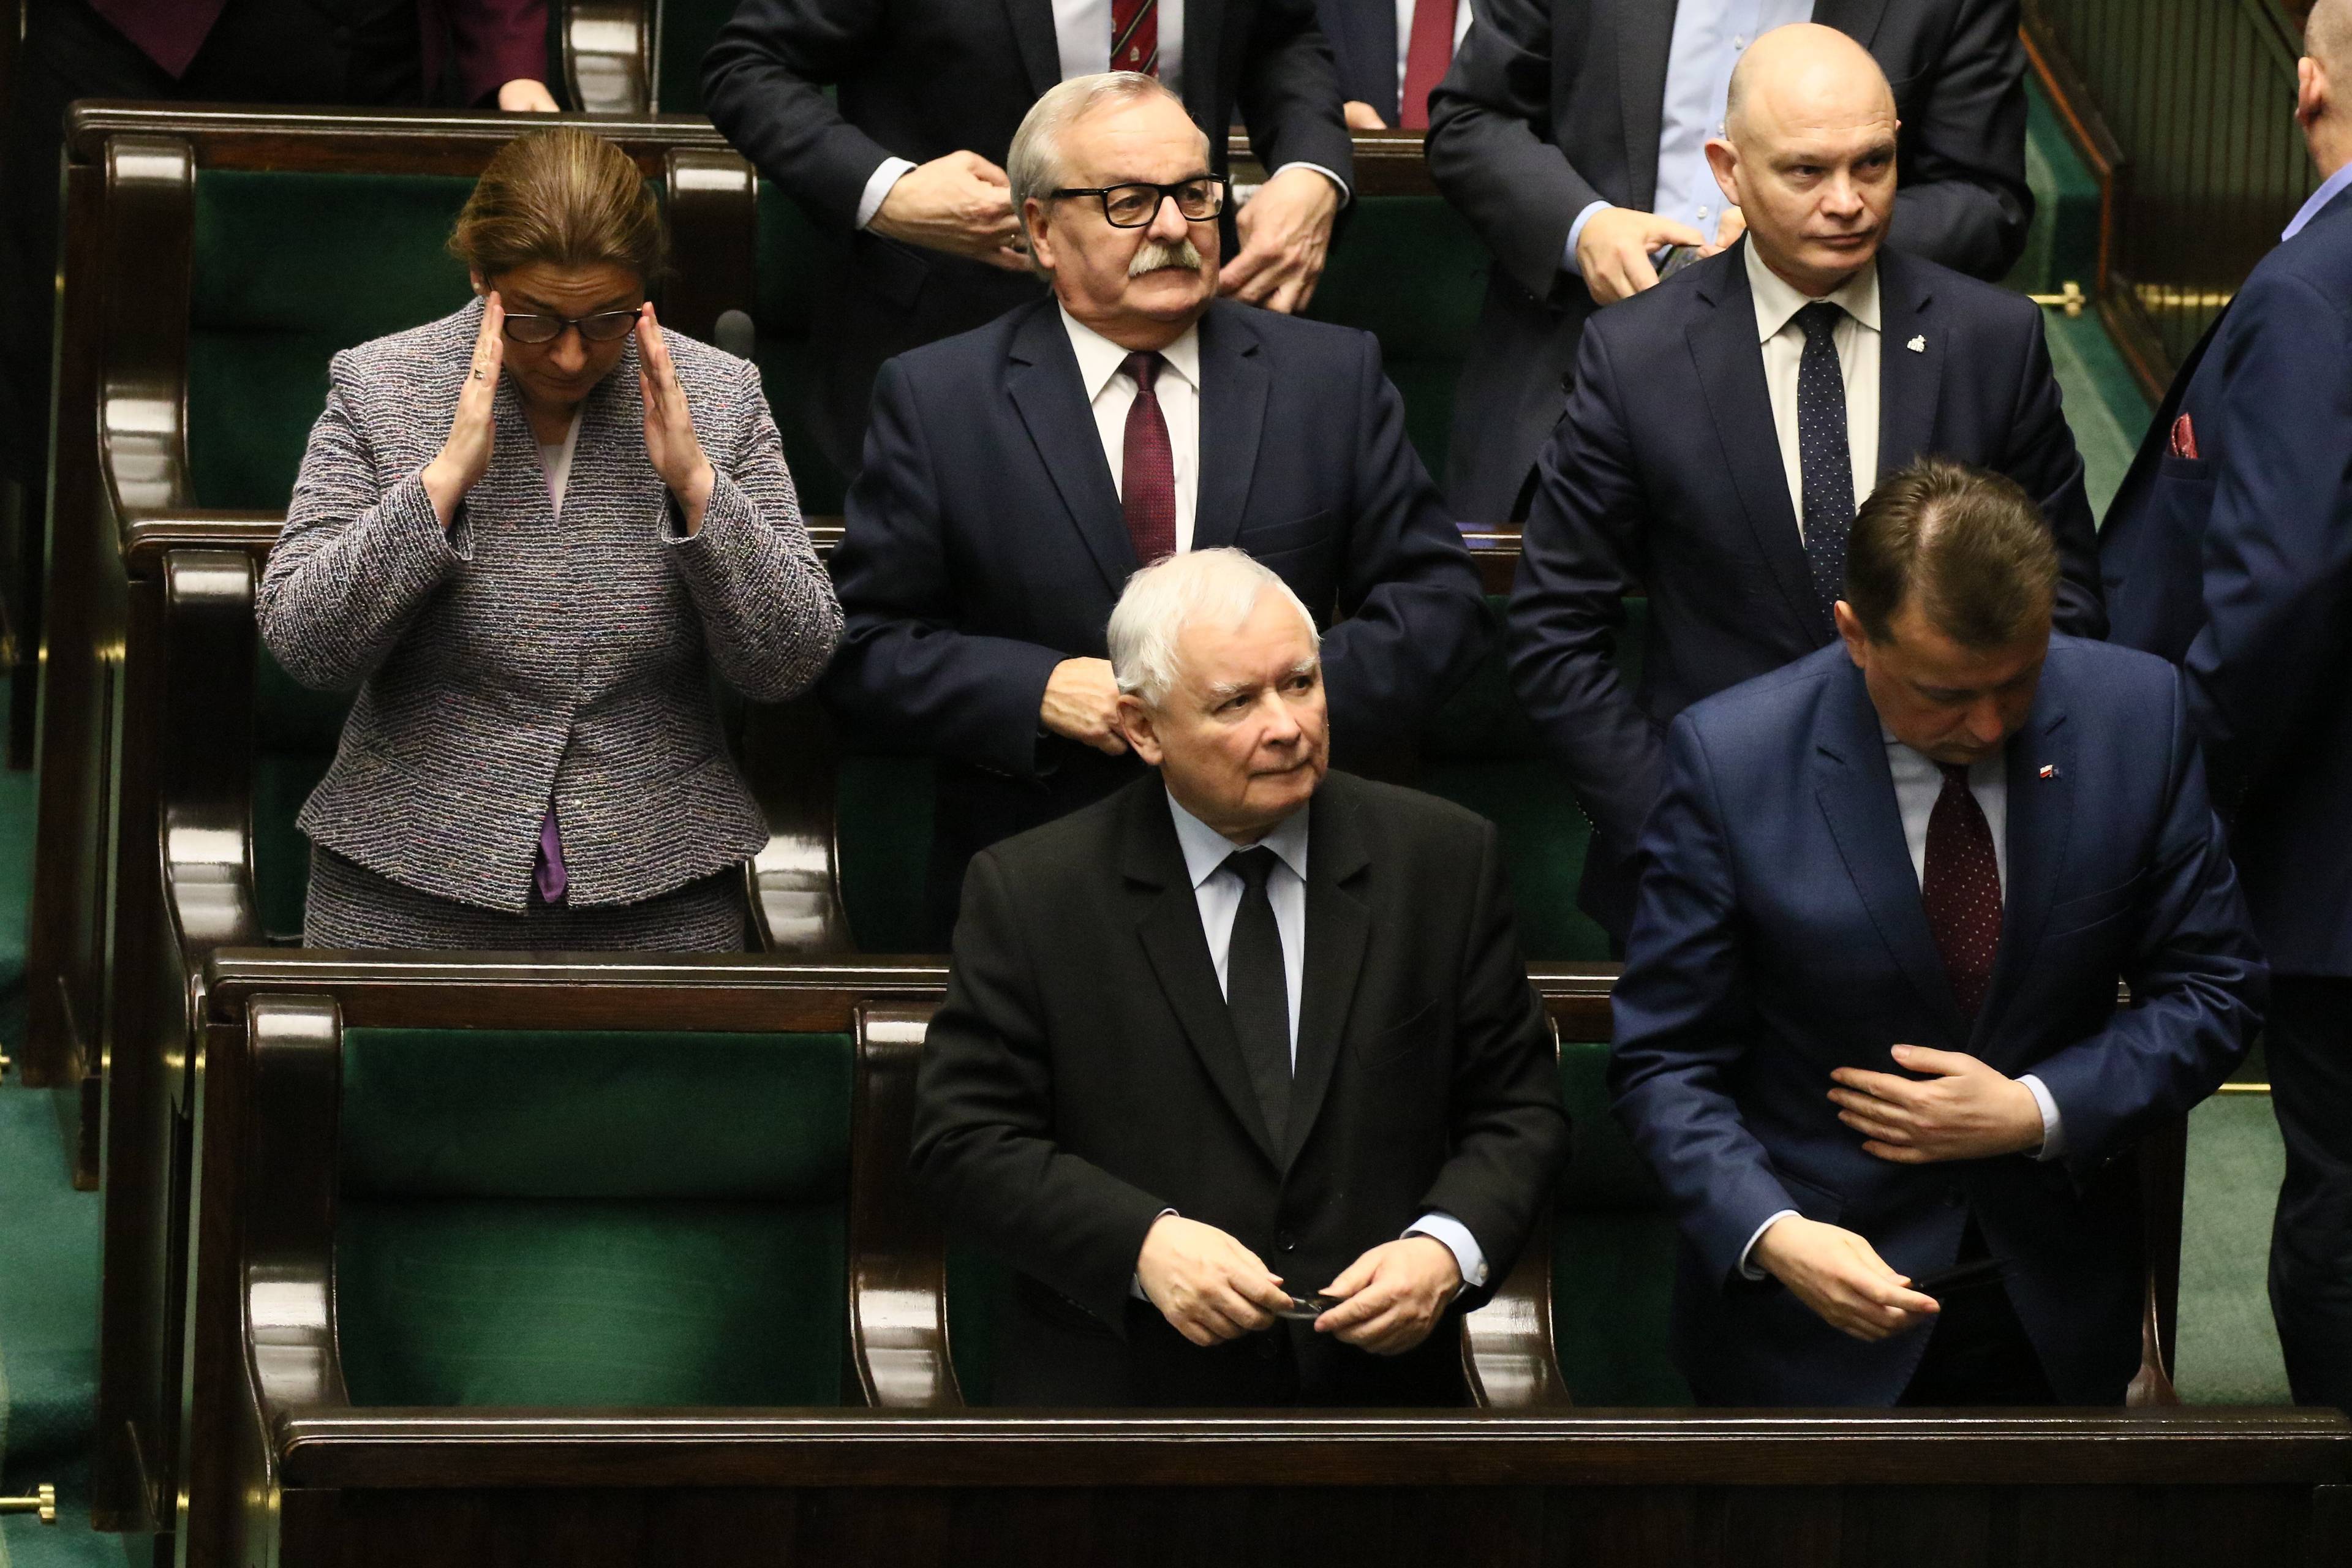 Jarosłąw Kaczyński stoi na swoim miejscu poselskim w Sejmie, patrzy w góre na wynik głosowania. Wokół niego Beata Mazurek i Mariusz Błaszczak